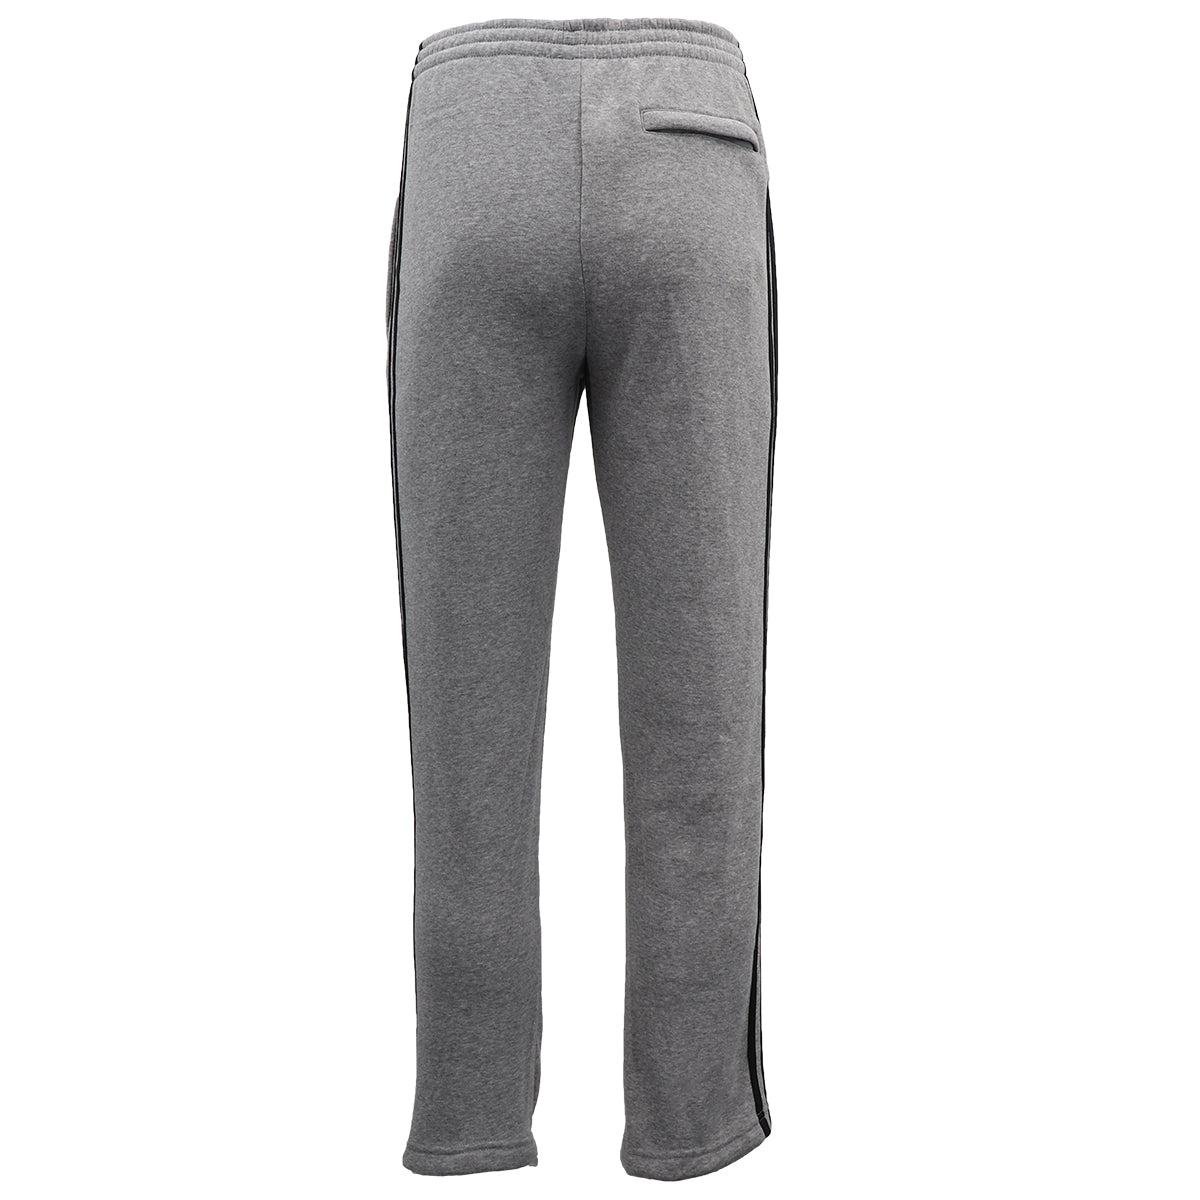 Men's Fleece Casual Sports Track Pants w Zip Pocket Striped Sweat Trousers S-6XL, Navy, XL